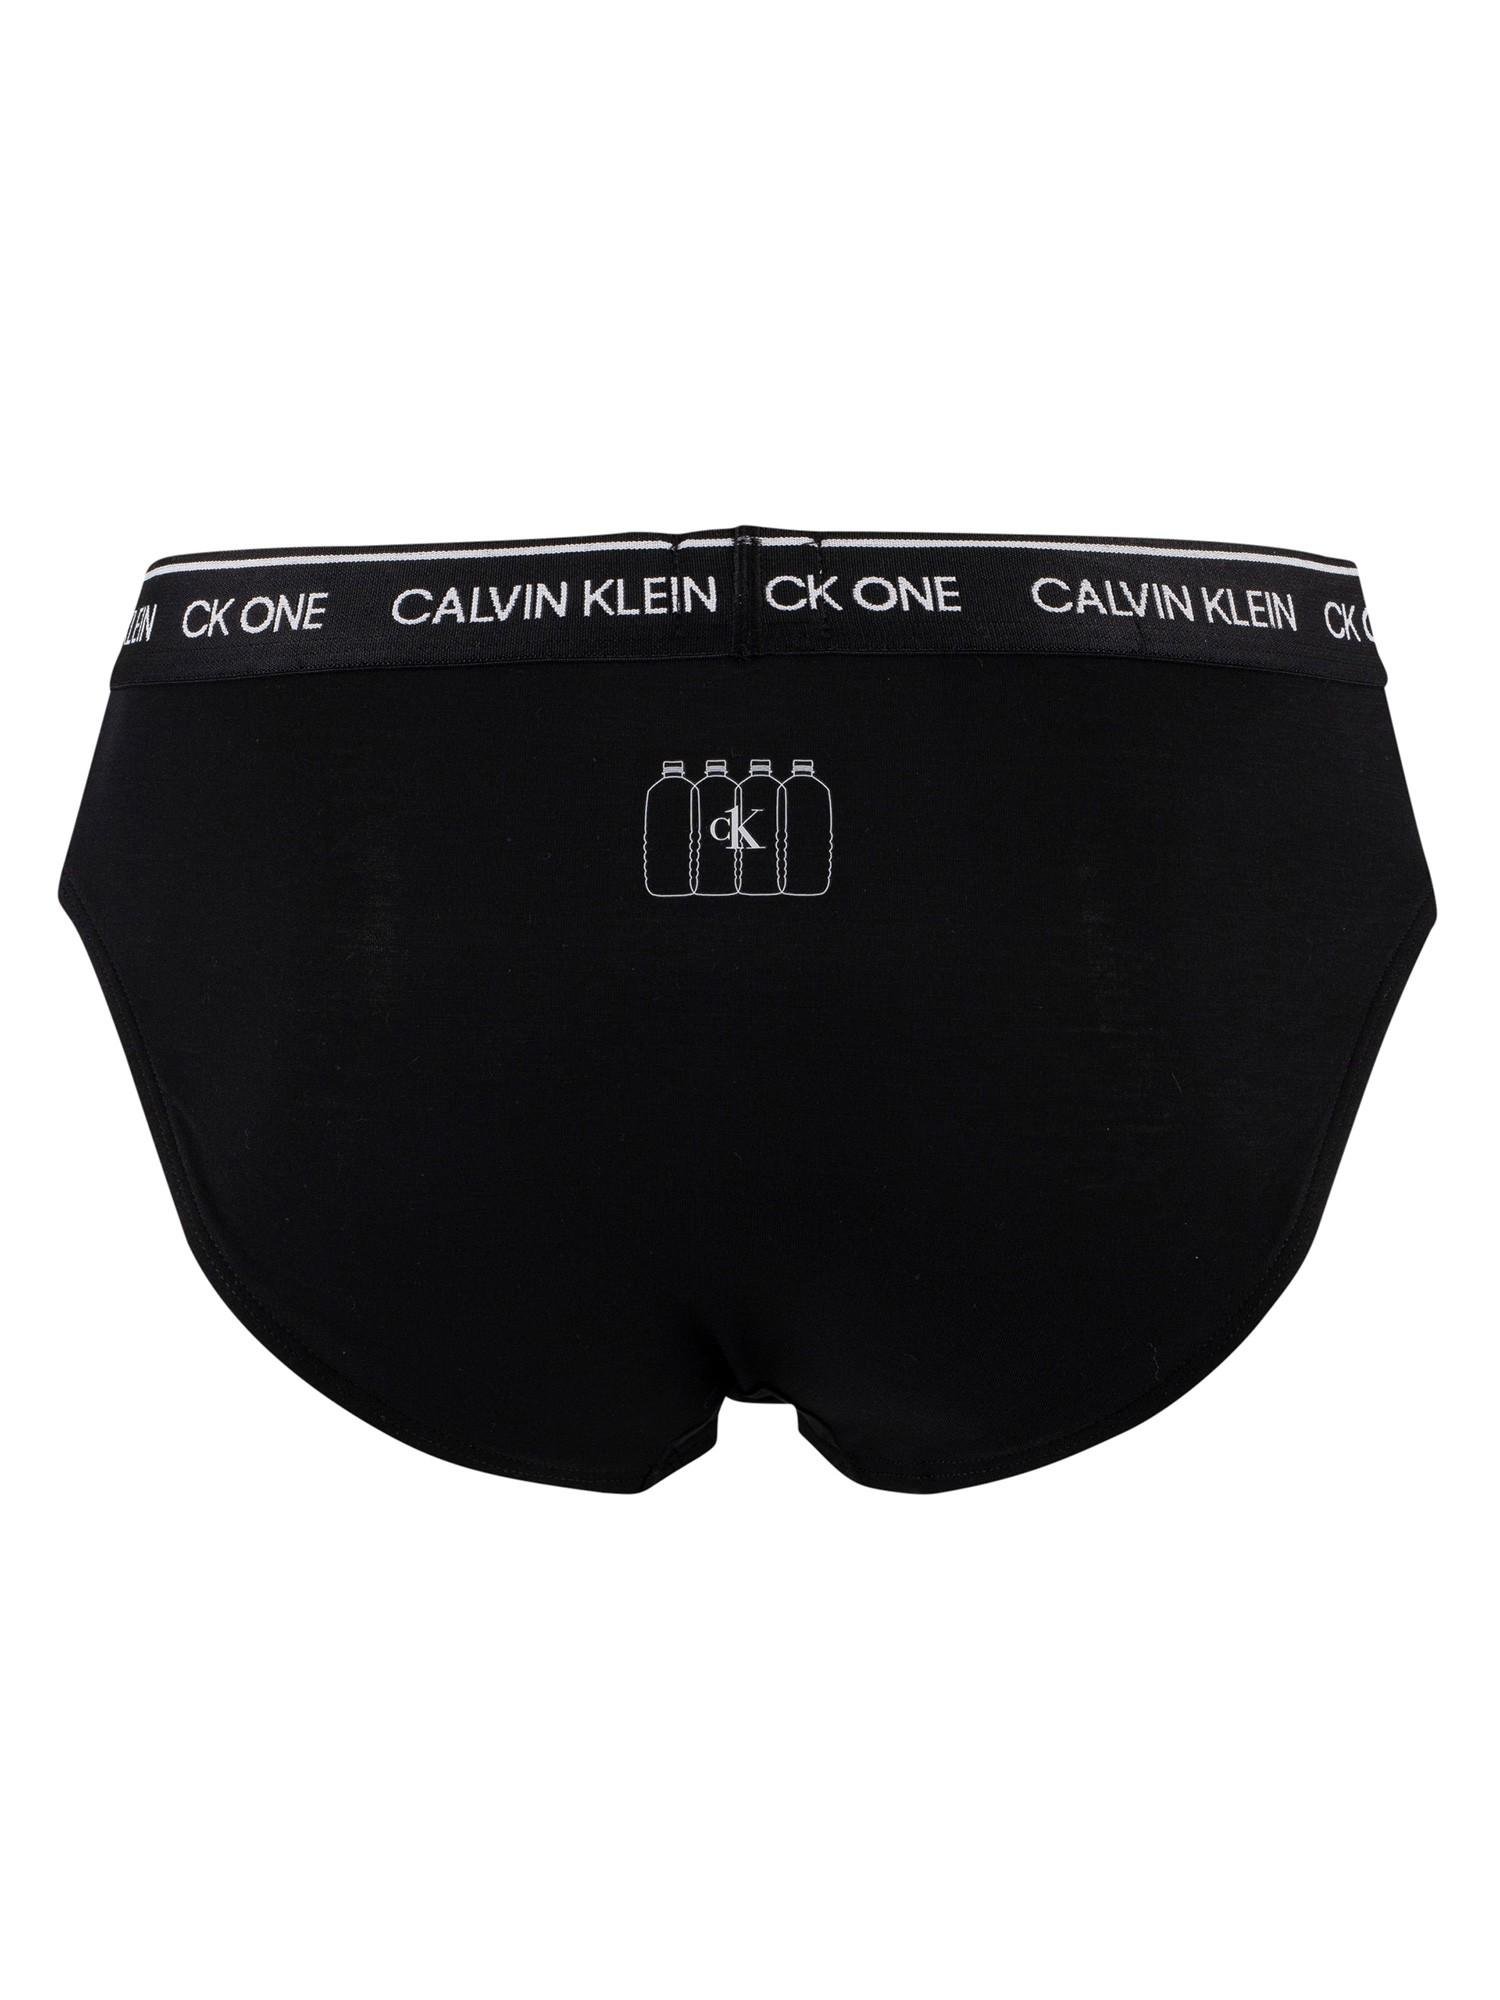 Calvin Klein Ck One Hip Briefs in Black for Men - Lyst